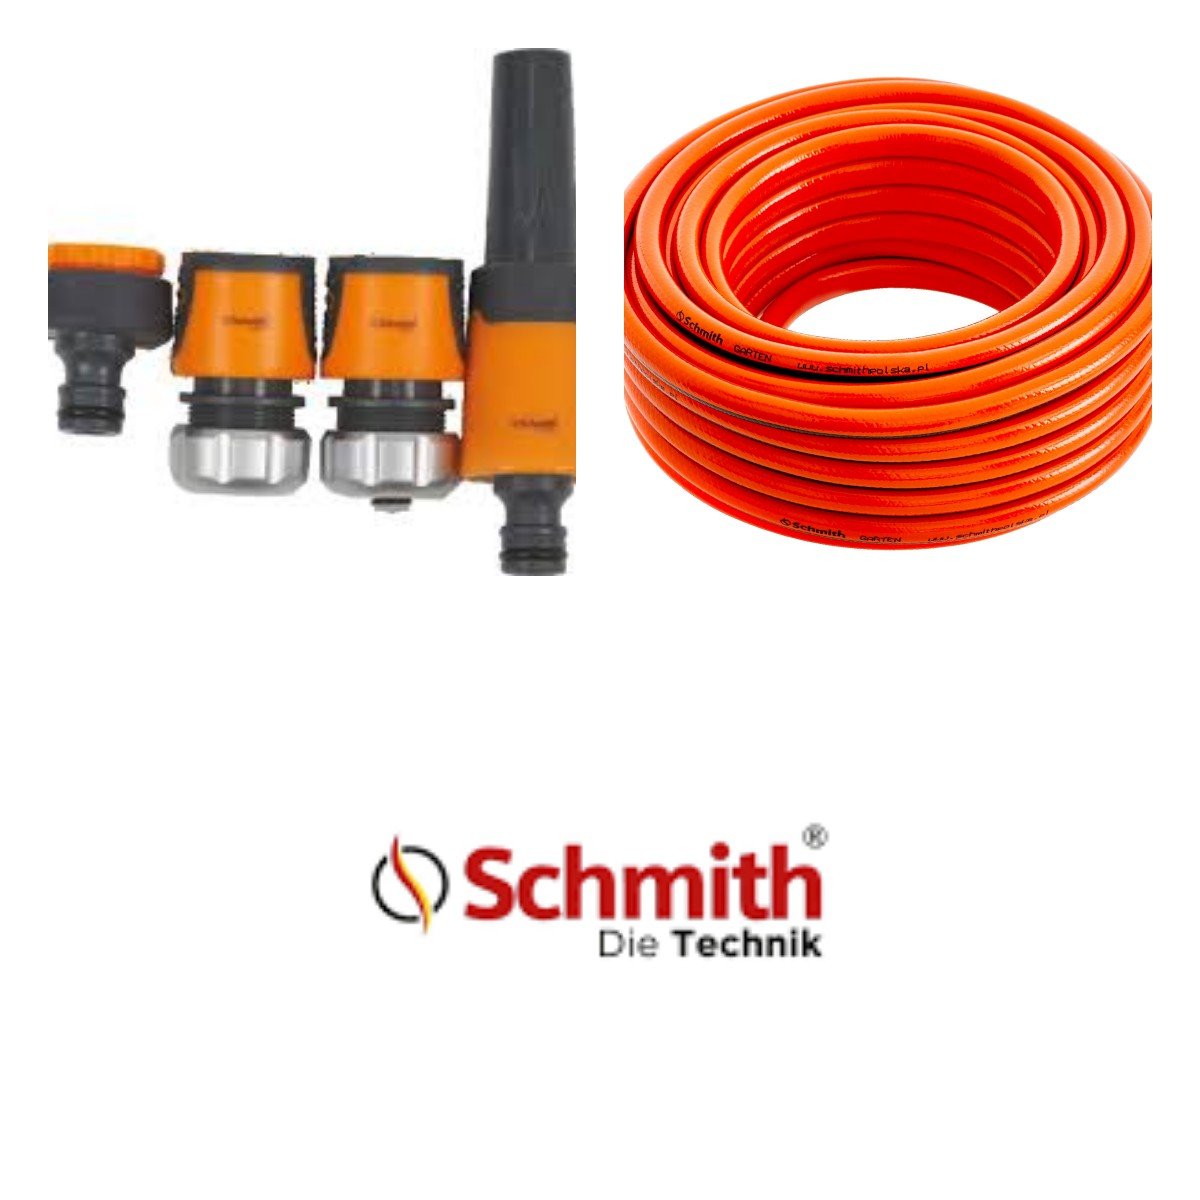 Zestaw Do Podlewania Schmith Wąż 1/2′ 50m + Dysza + 2x Szybkozłącze + Przyłącze